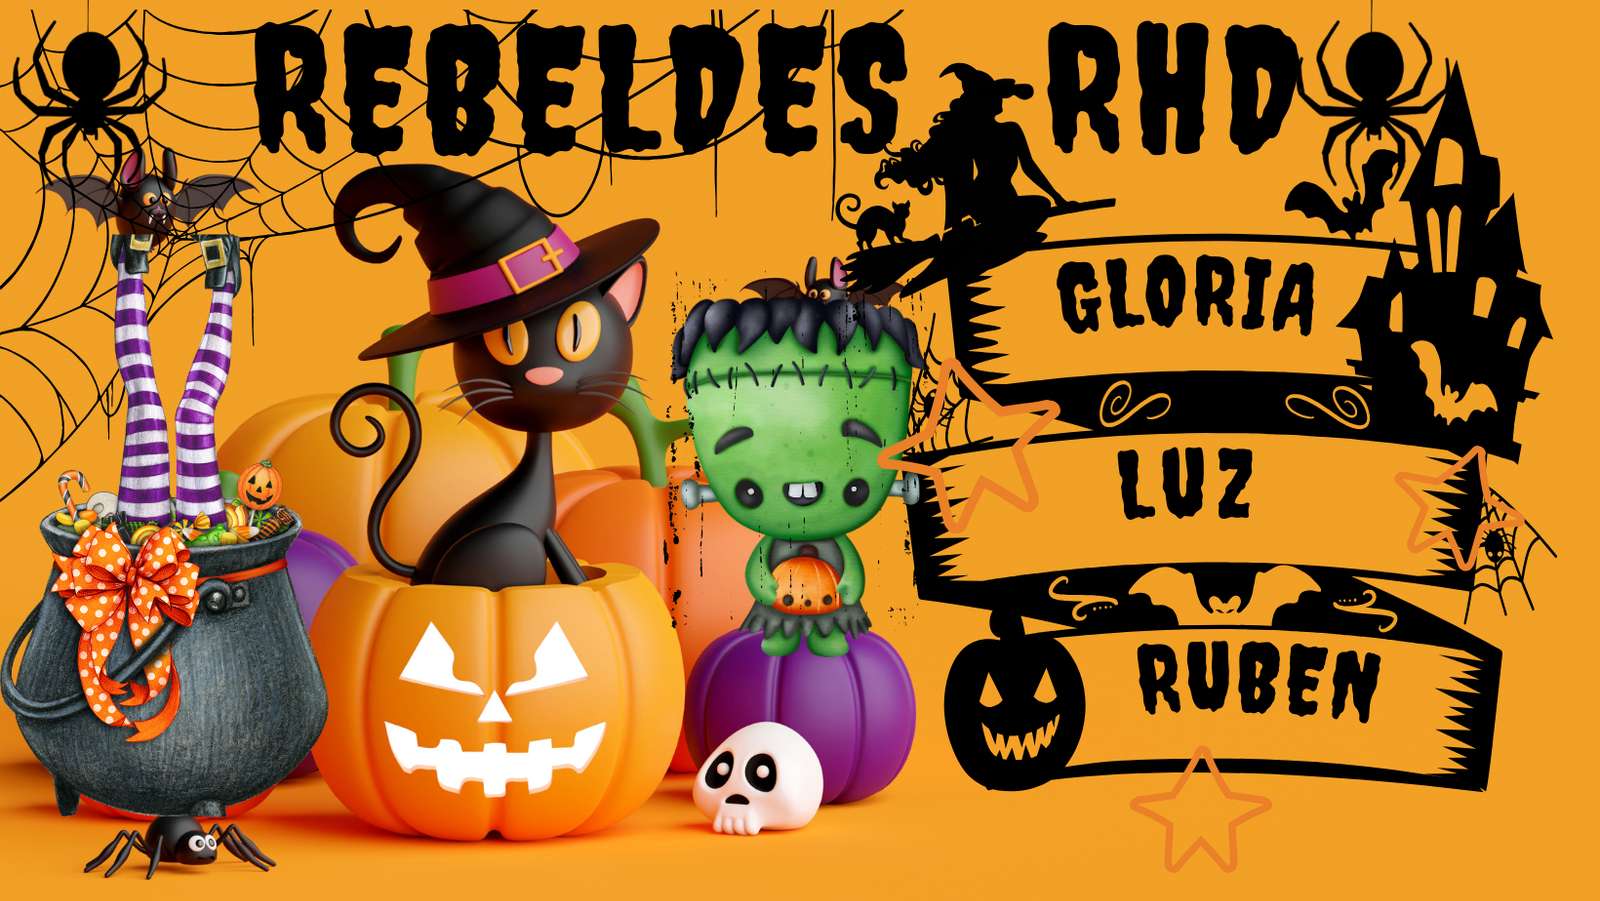 Rebellen-RHD Puzzlespiel online